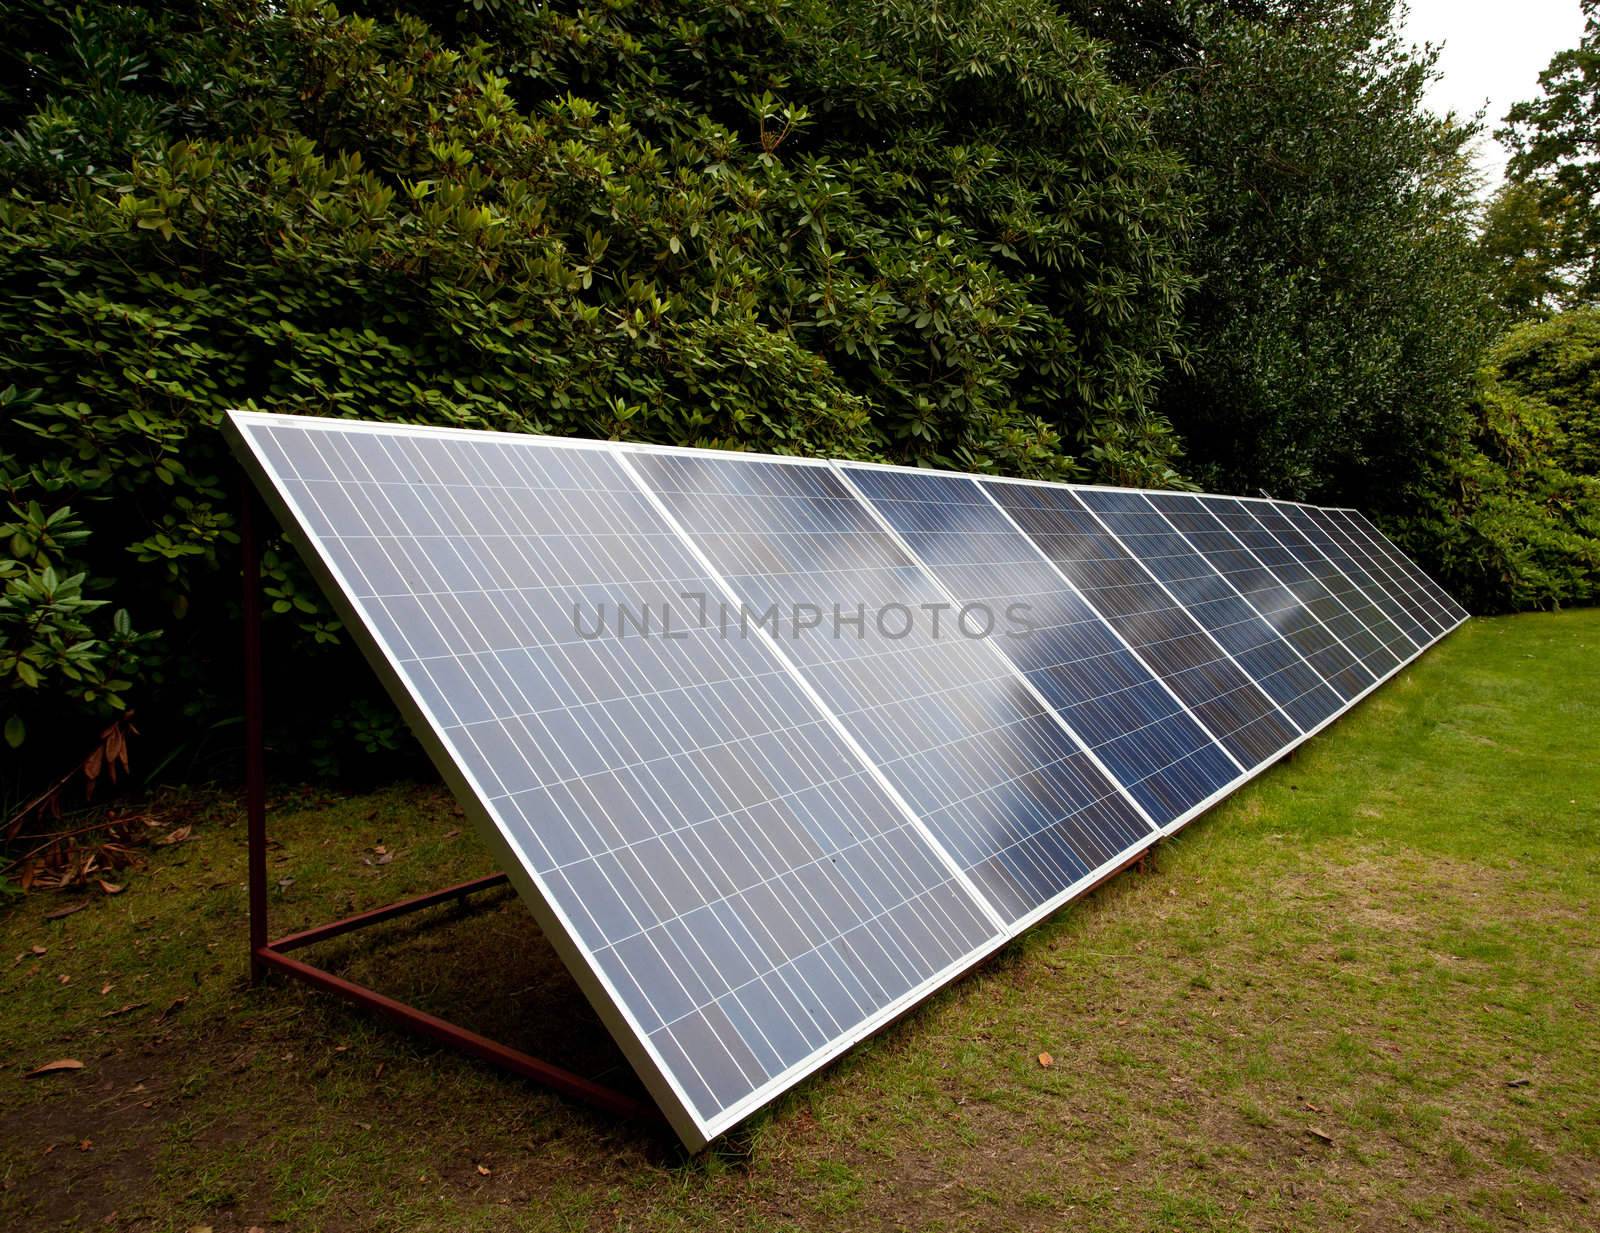 Solar panels in garden by steheap